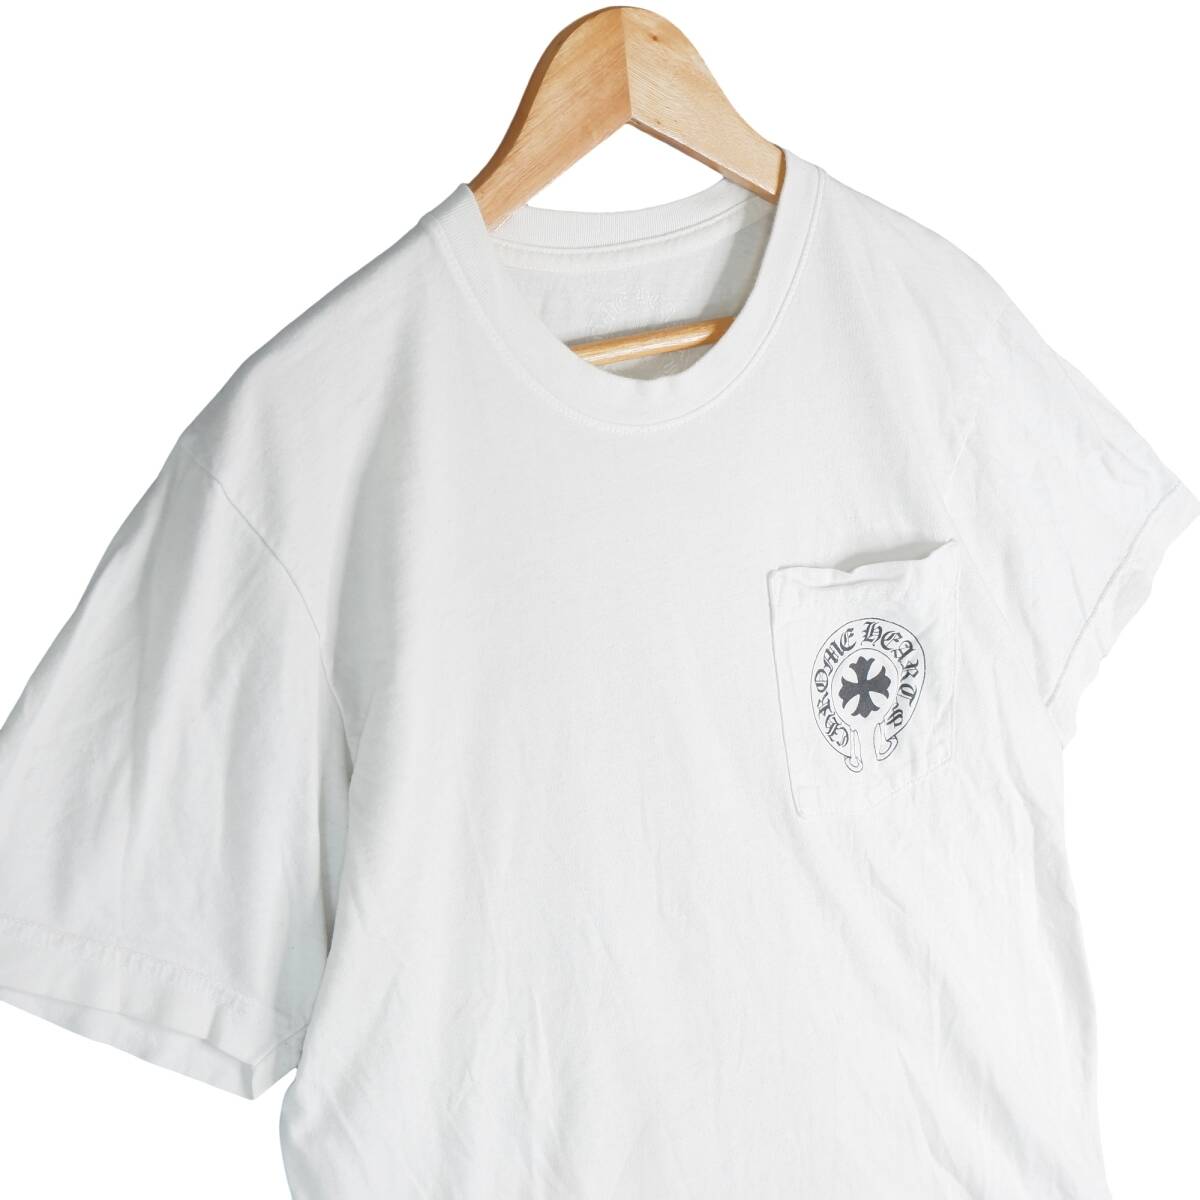 ◆送料無料◆ Chrome Hearts クロムハーツ プリント 半袖 ポケット Tシャツ カットソー 白 ホワイト メンズ M ◆アメリカ製◆ 1514E0_画像3